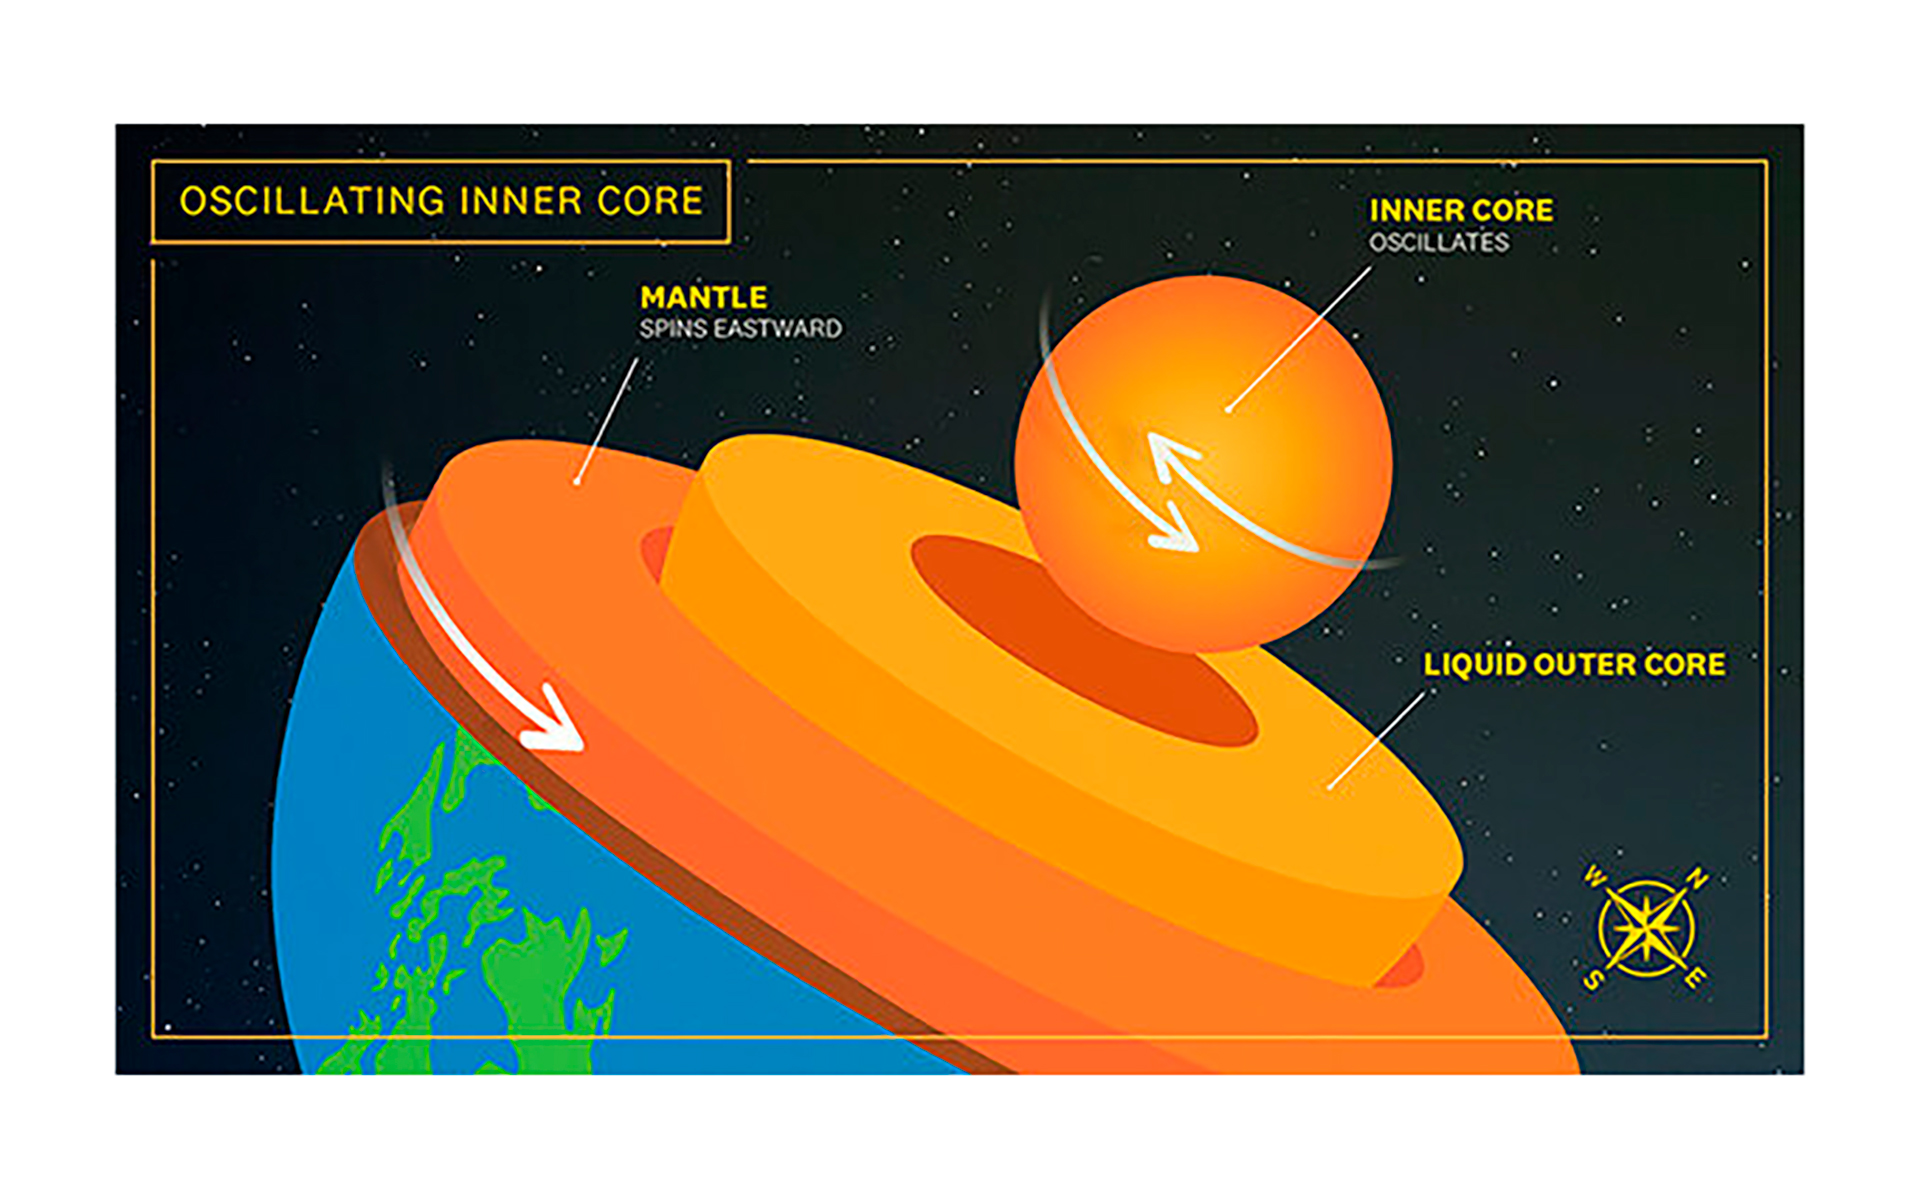 Los investigadores de la USC identificaron un ciclo de seis años de súper y sub-rotación en el núcleo interno de la Tierra, lo que contradice los modelos previamente aceptados que sugerían que rota constantemente a un ritmo más rápido que la superficie del planeta. (Gentileza Edward Sotelo/USC)